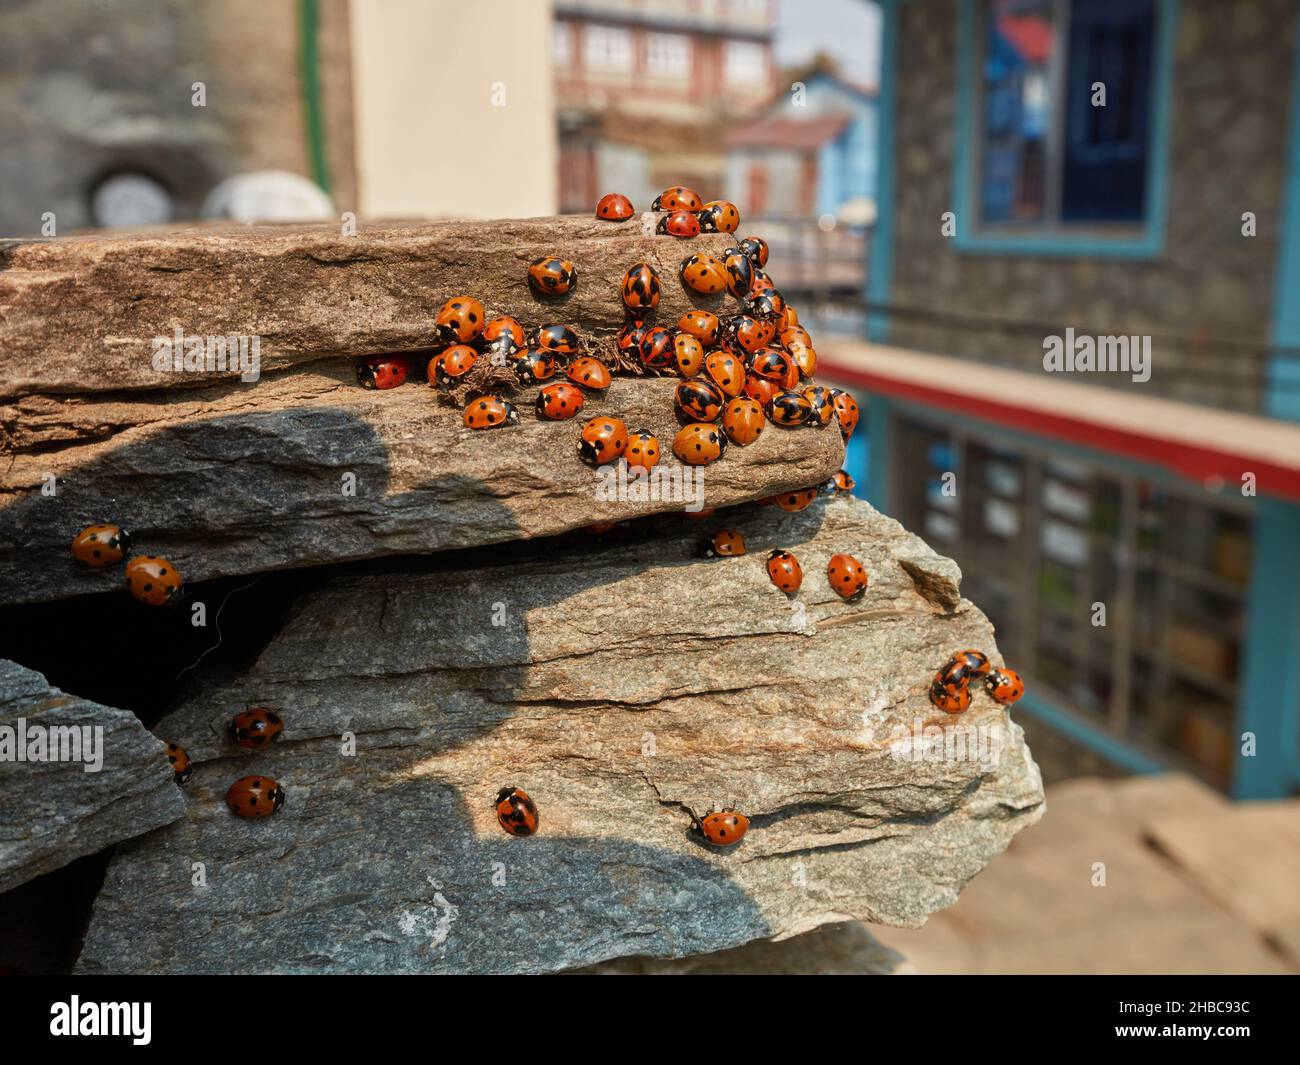 Dame de l'Asie multicolore.Un grand groupe de ladybirds s'est accumulé sur les rochers près des bâtiments Banque D'Images